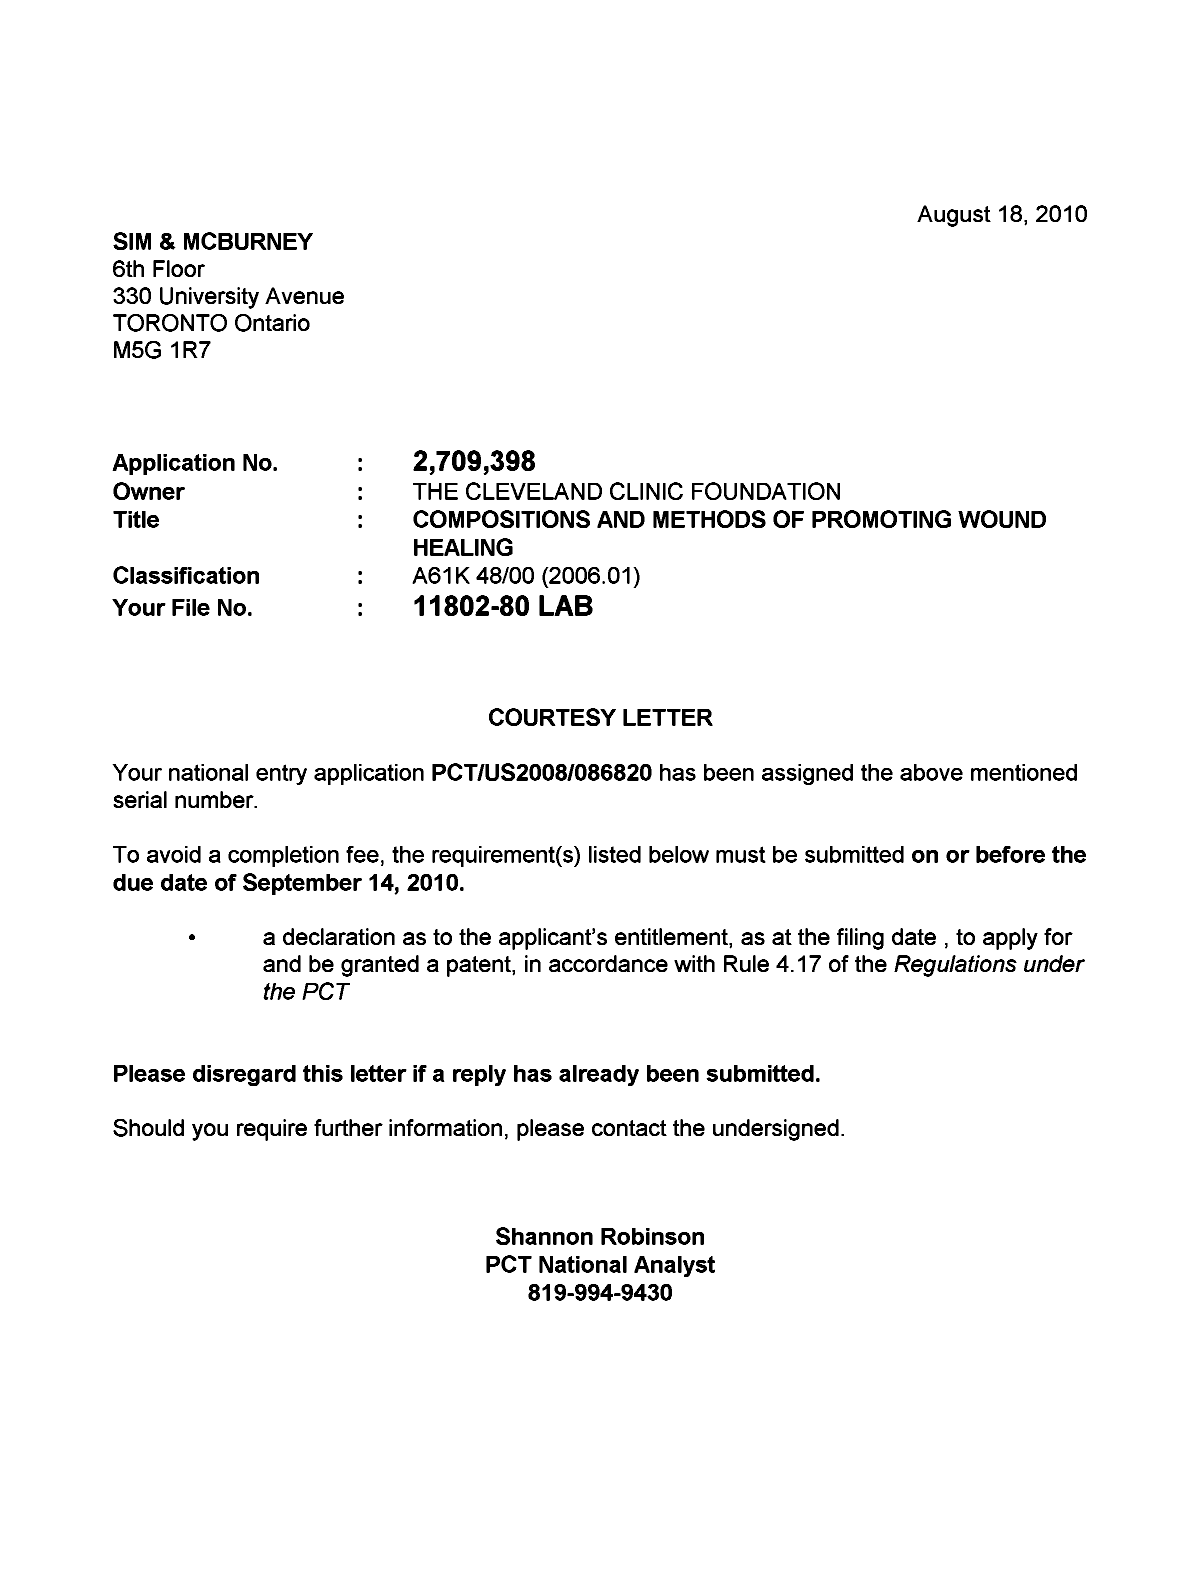 Document de brevet canadien 2709398. Correspondance 20100818. Image 1 de 1